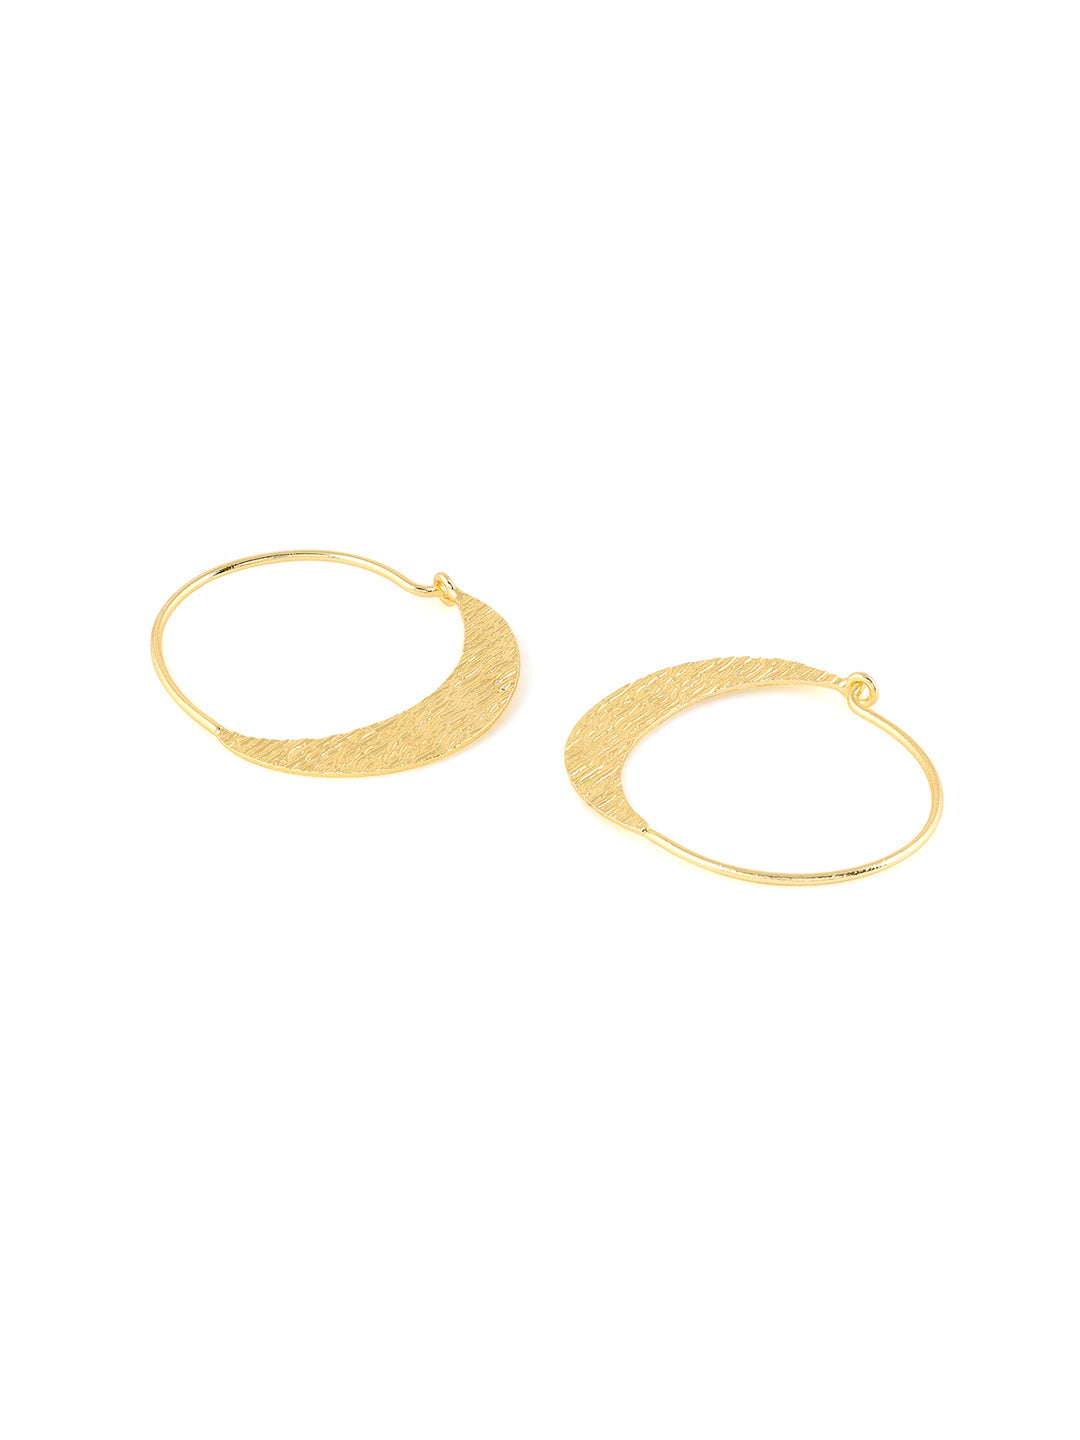 Priyaasi Simple Gold Plated Hoop Earrings